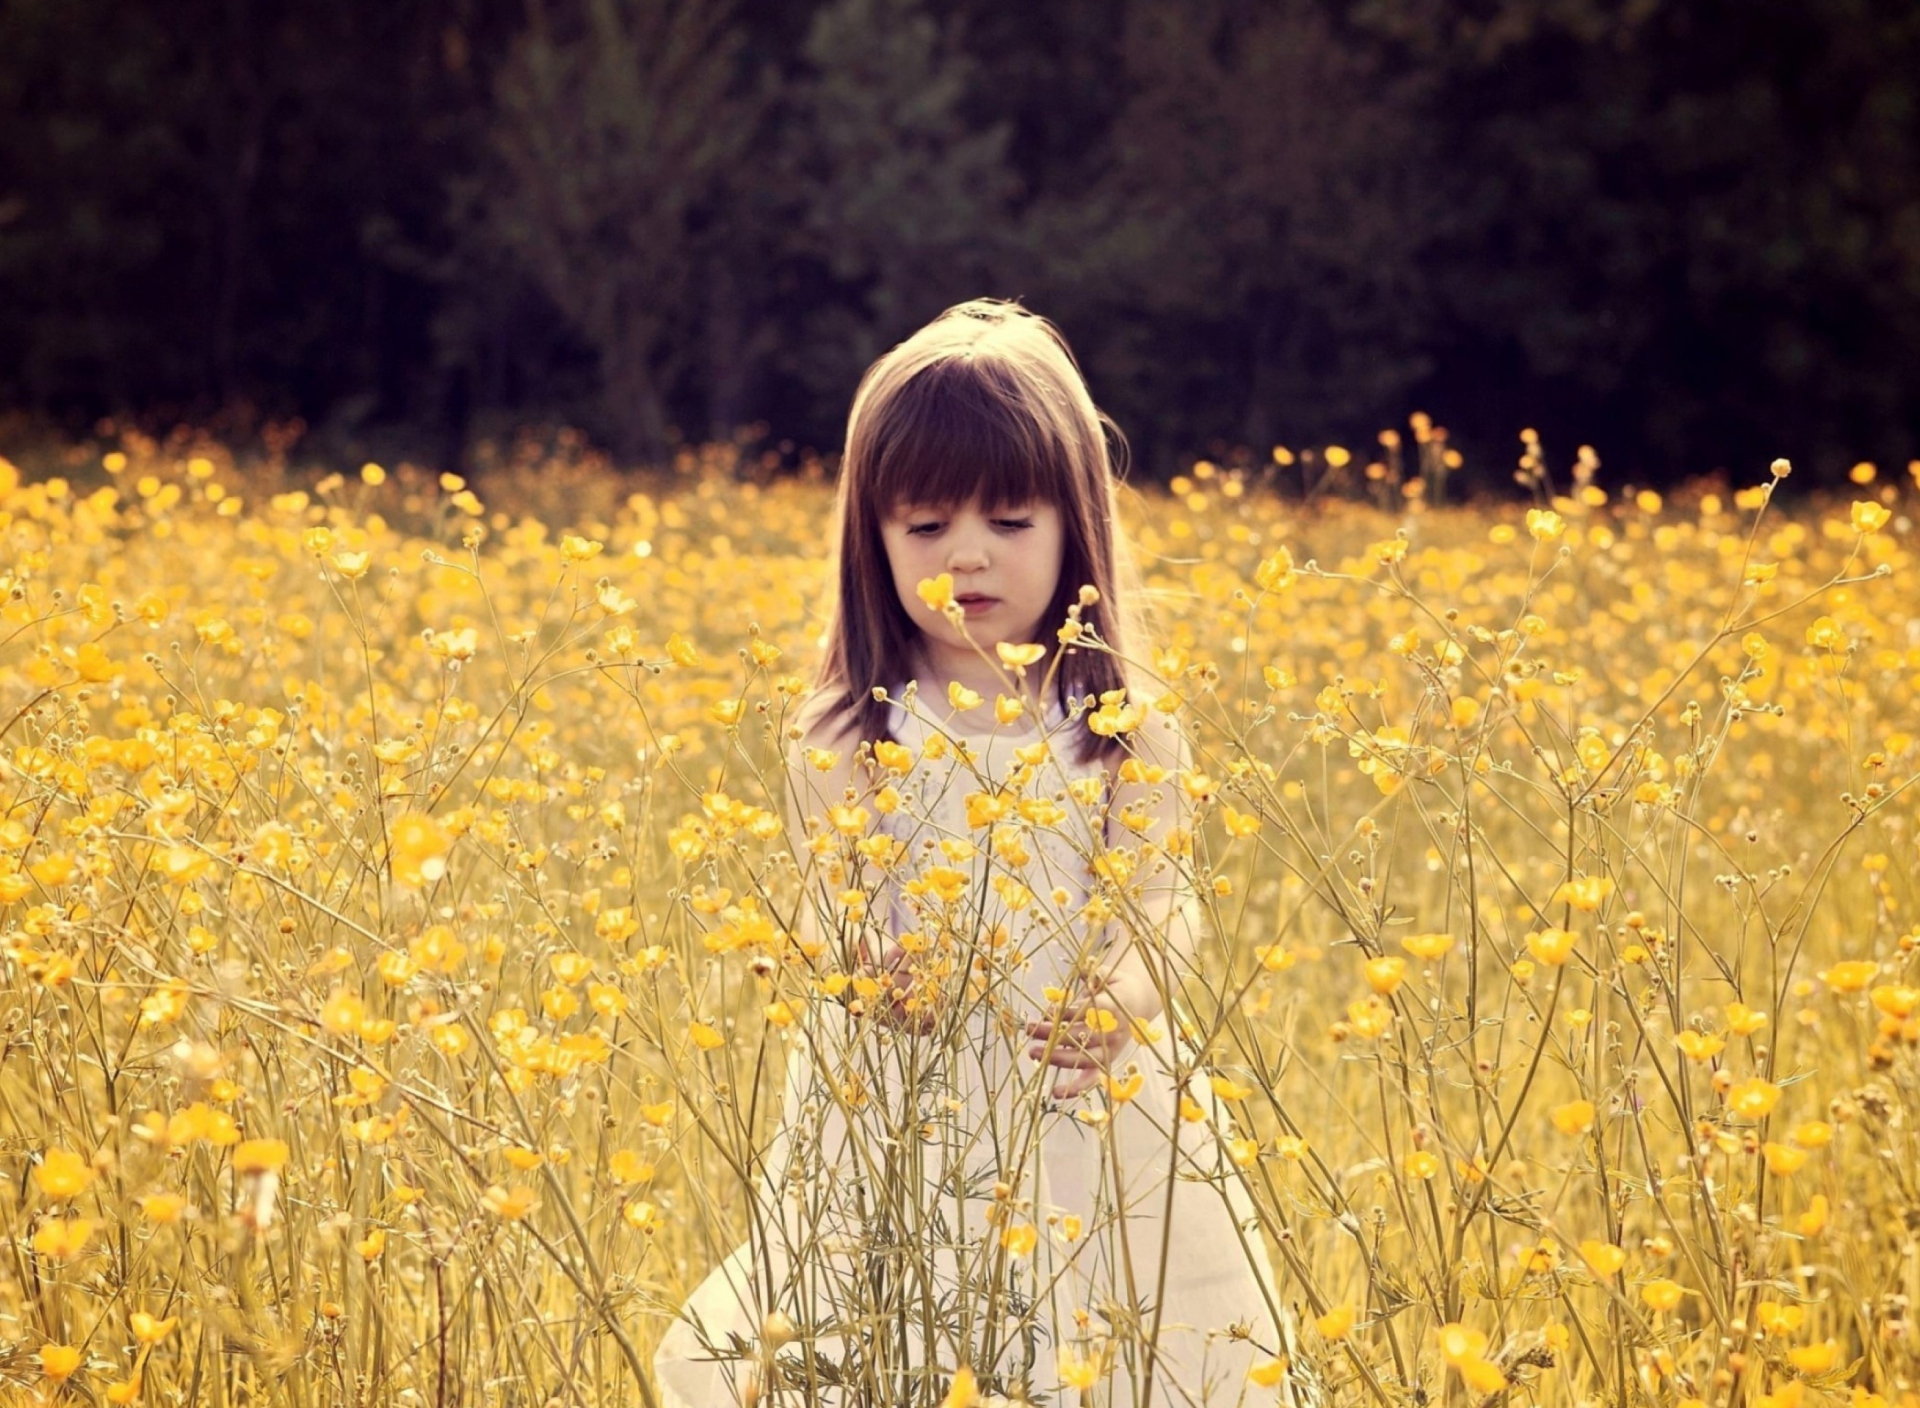 Cute Little Girl In Flower Field wallpaper 1920x1408